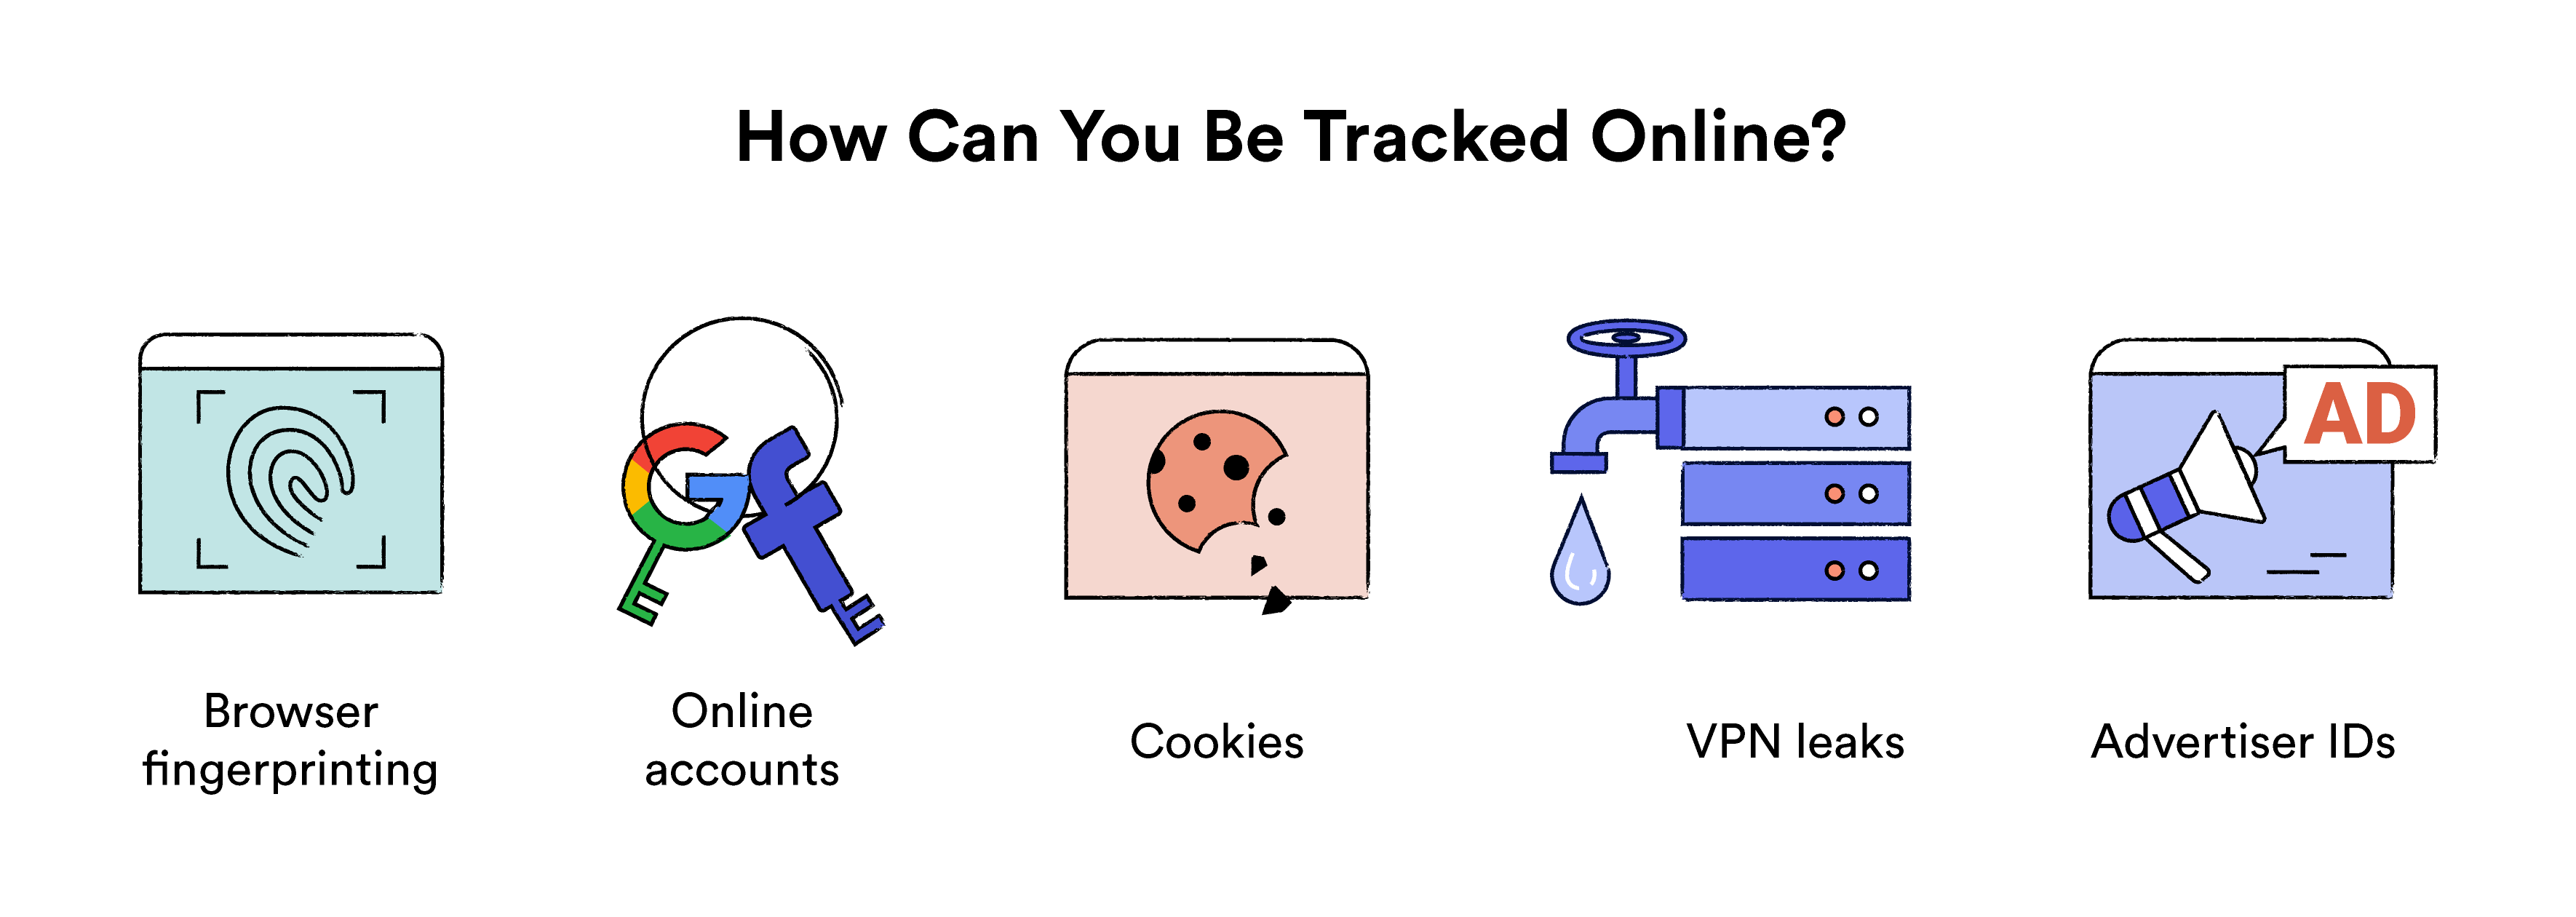 رسم توضيحي يوضح كيفية تتبعك على الإنترنت.